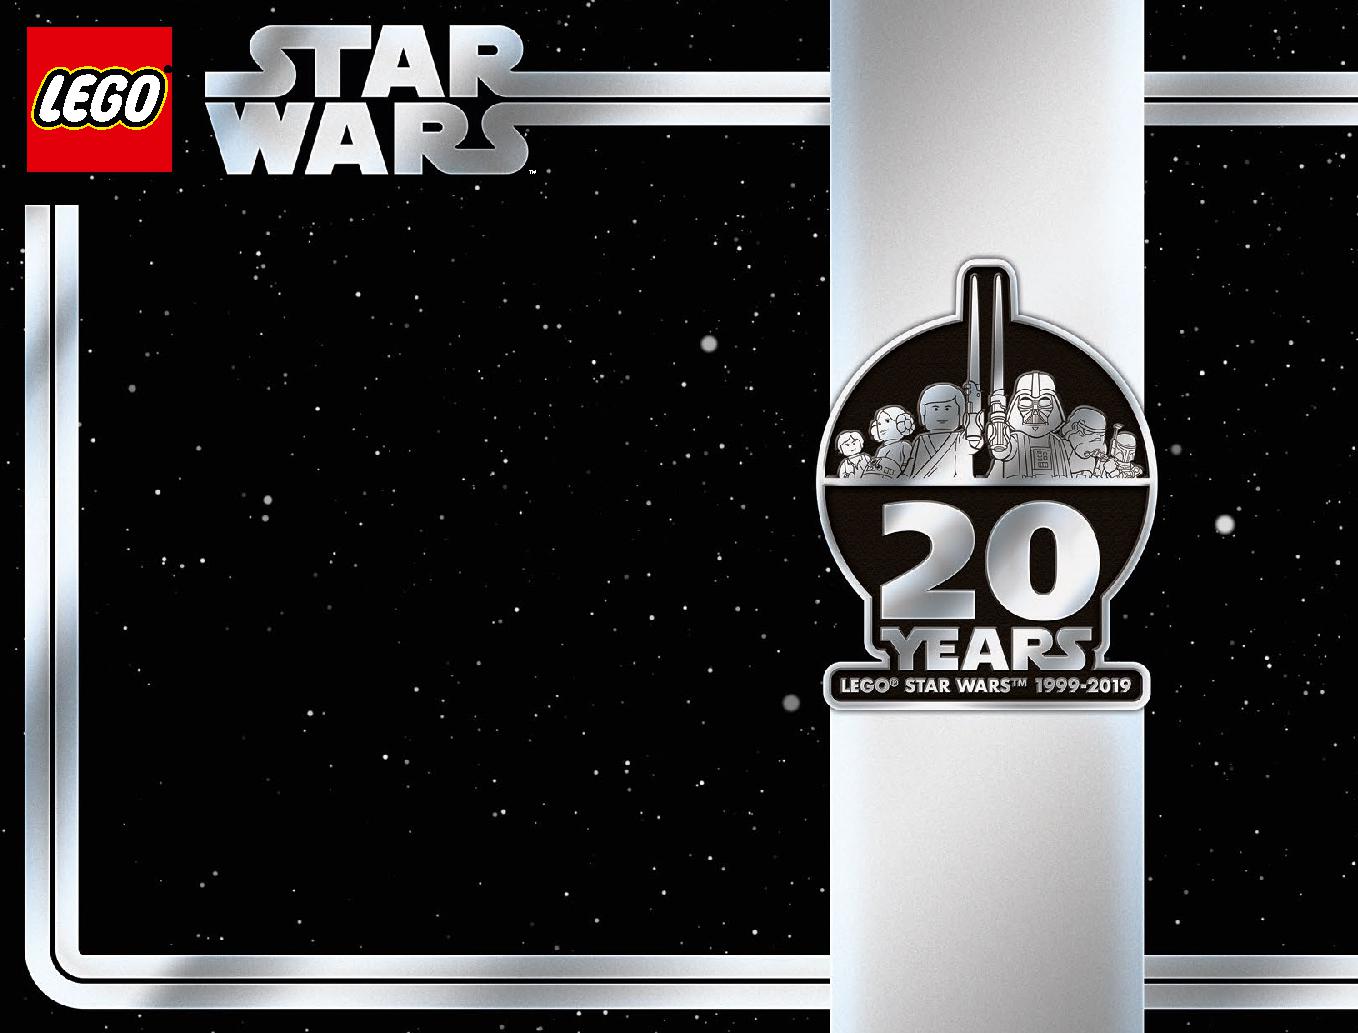 스타워즈 20주년 기념 - 슬레이브 l™ 75243 레고 세트 제품정보 레고 조립설명서 2 page